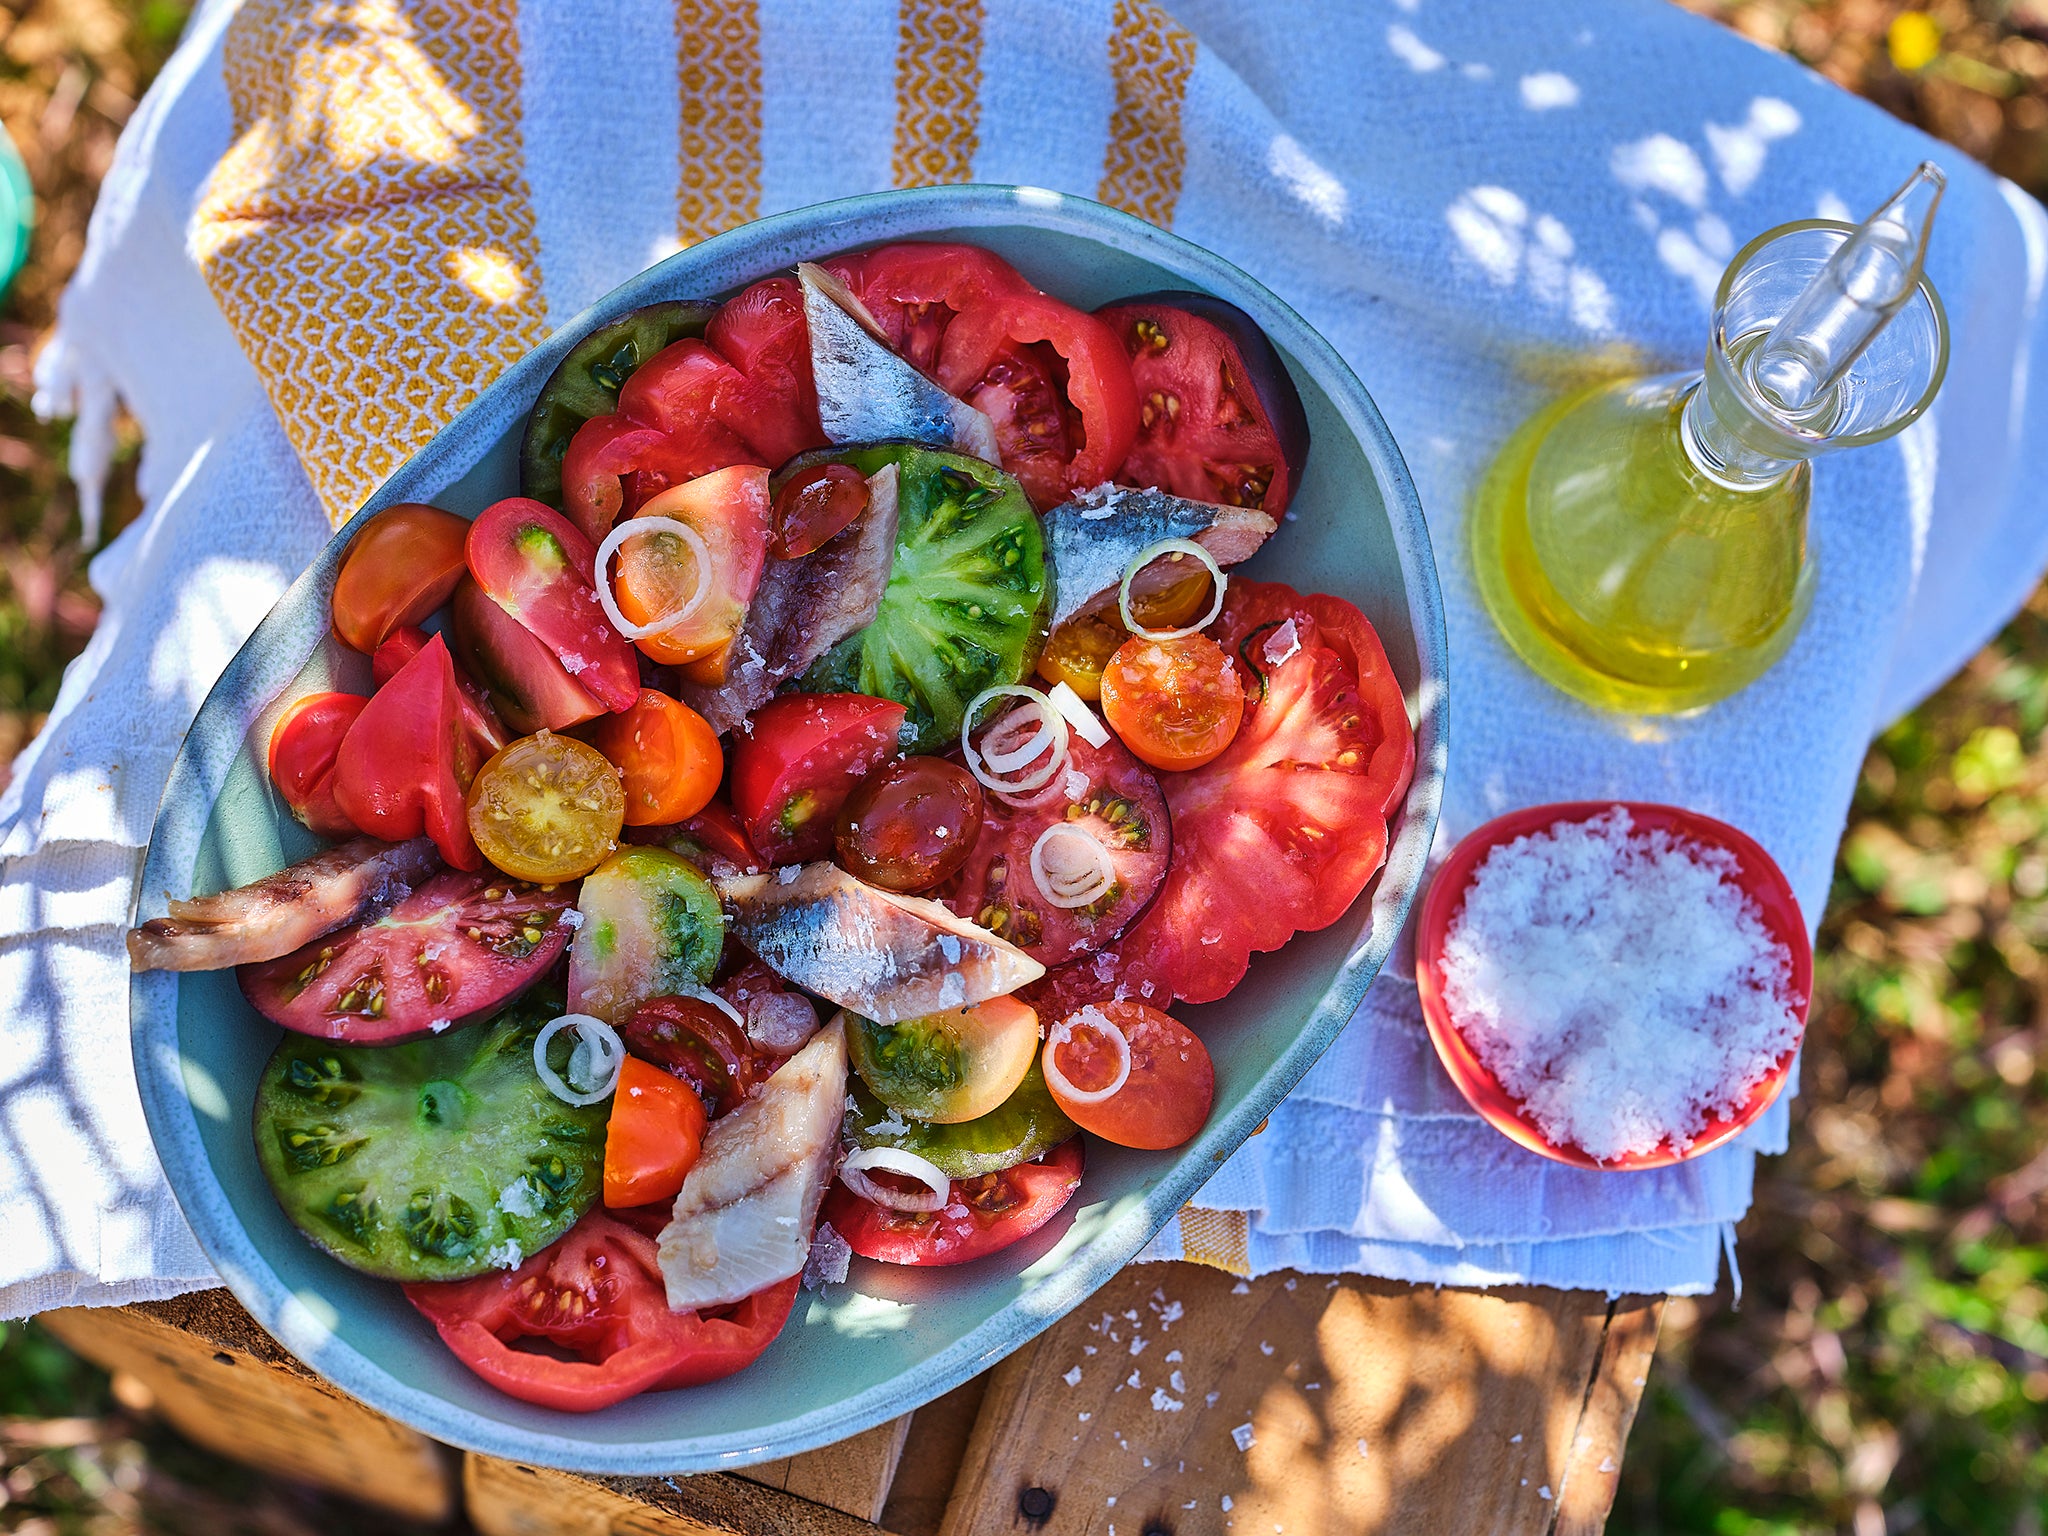 Sardines give the humble tomato salad smoky depth